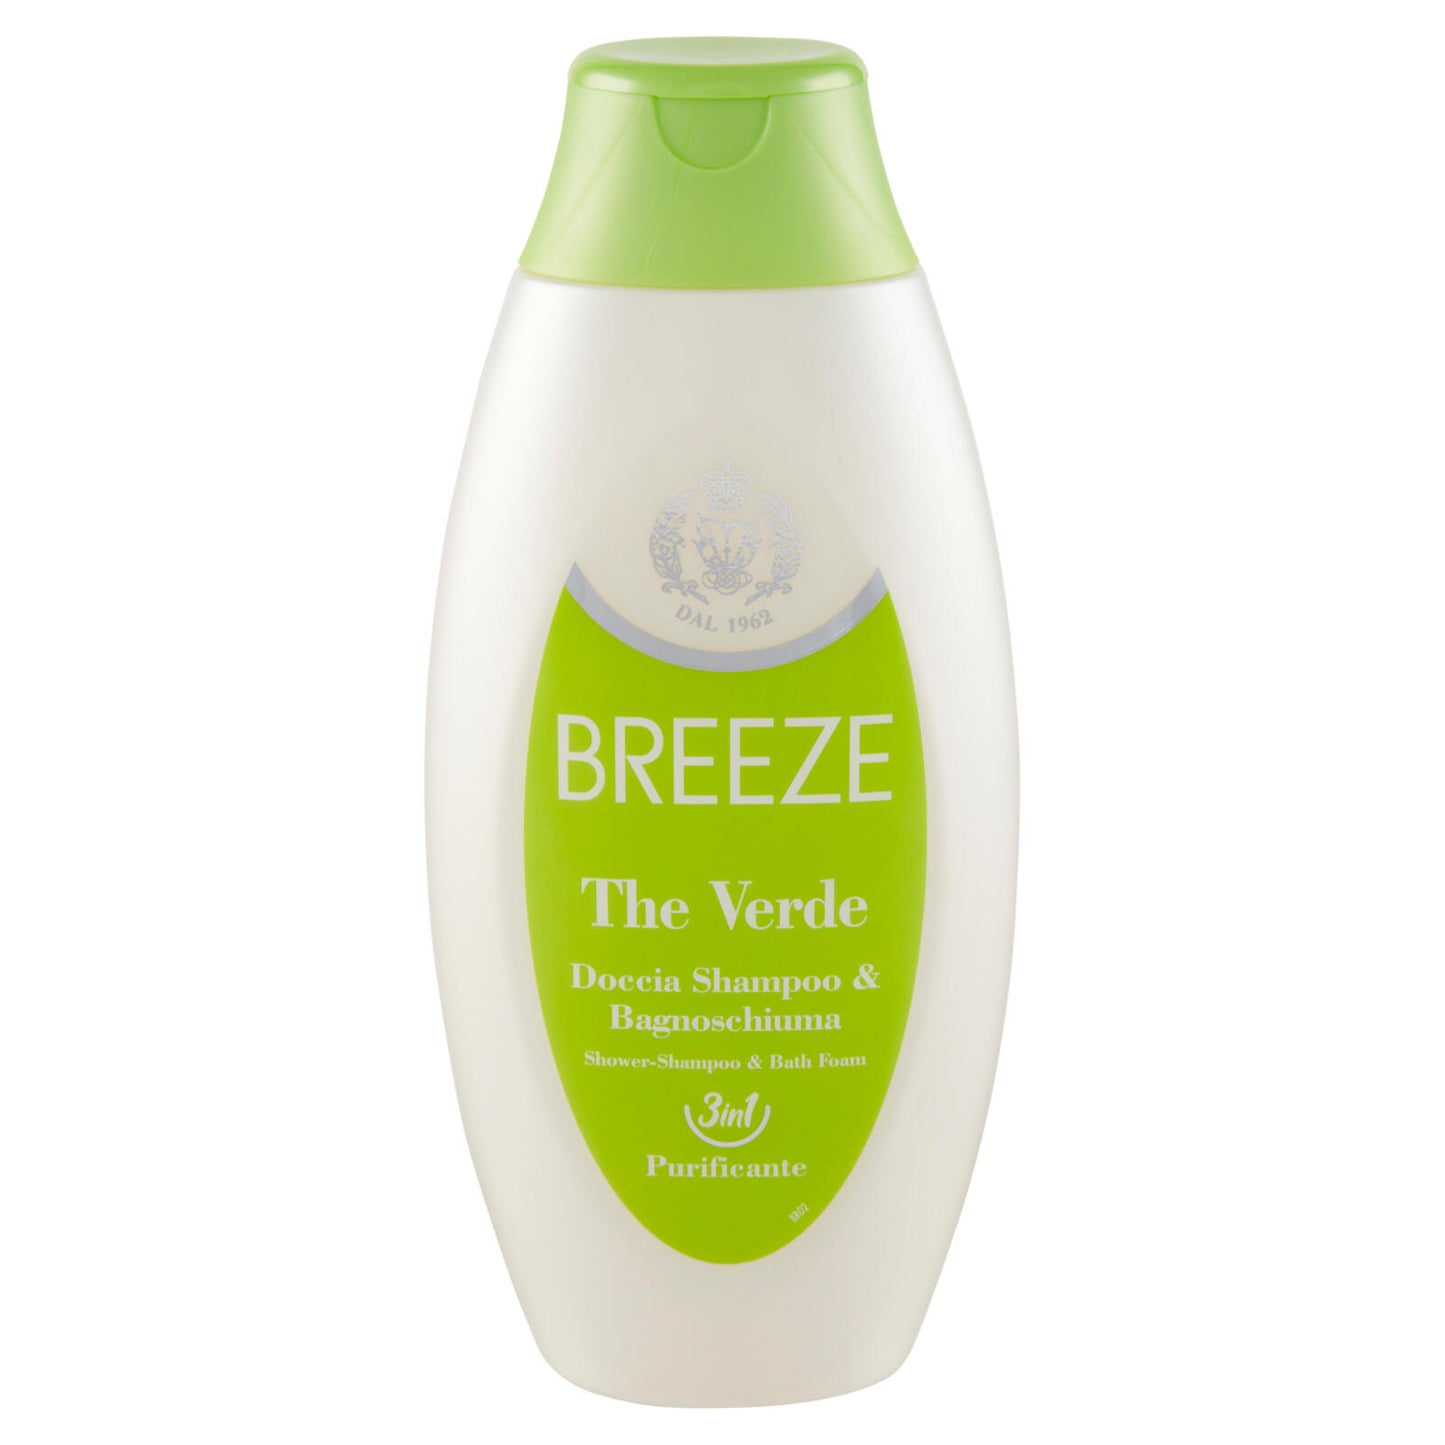 Breeze The Verde Doccia Shampoo & Bagnoschiuma Purificante 400 mL